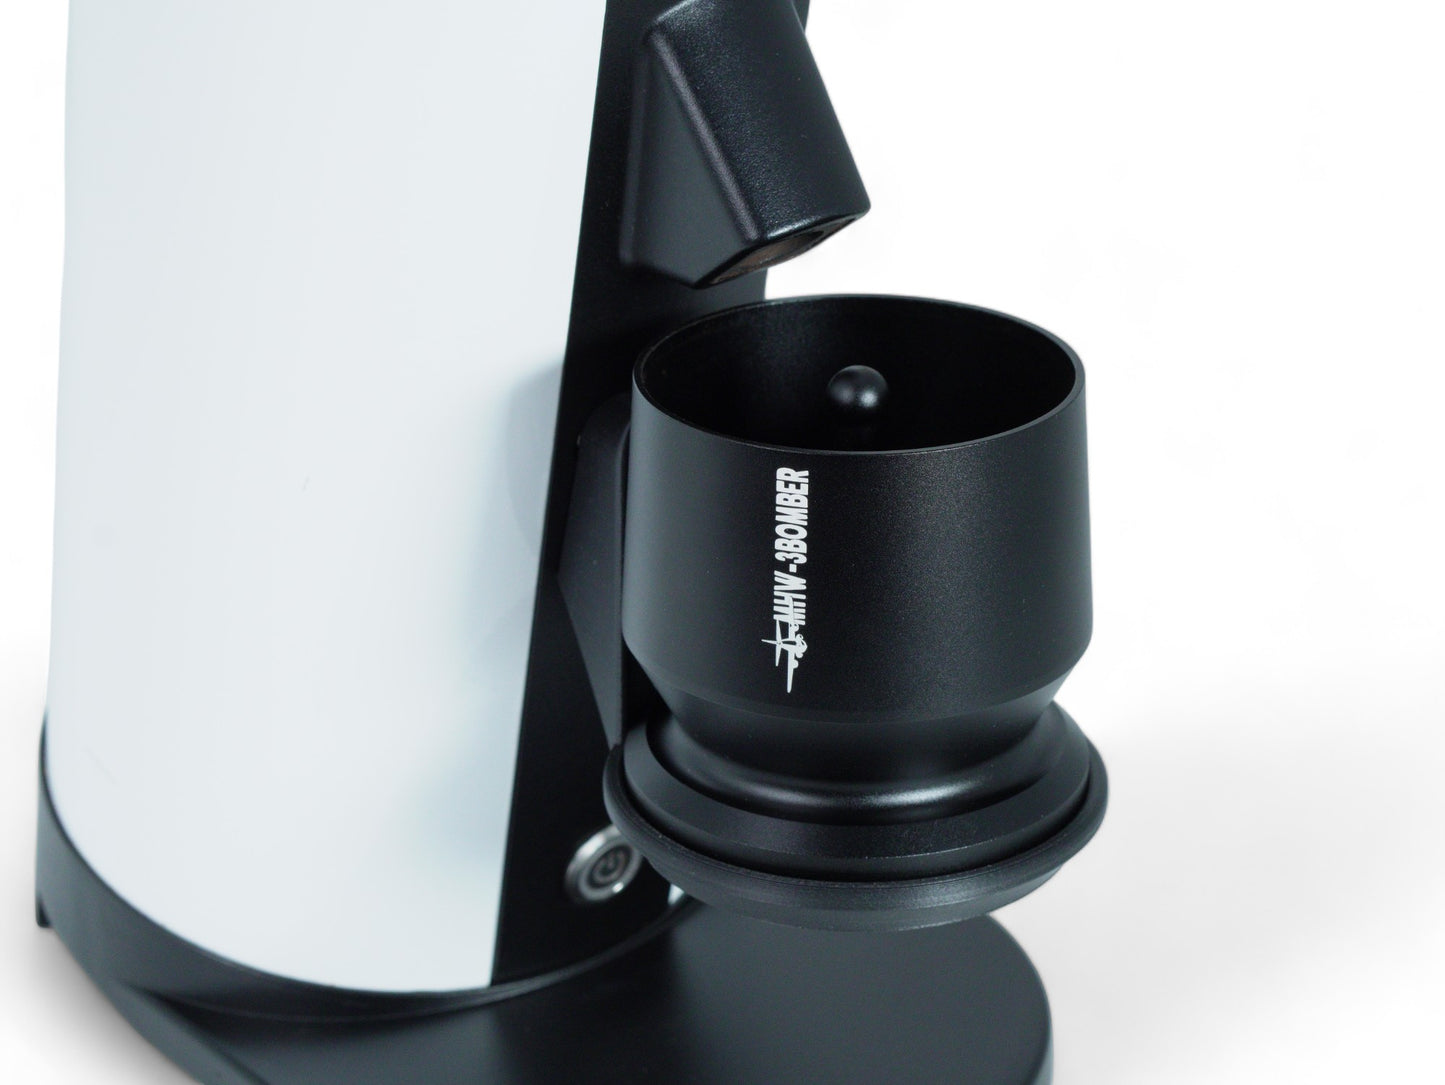 DF64 Gen 1/2 Blind Shaker Holder and MHW-3BOMBER Shaker | Weber Workshop | Metal Cup Holder